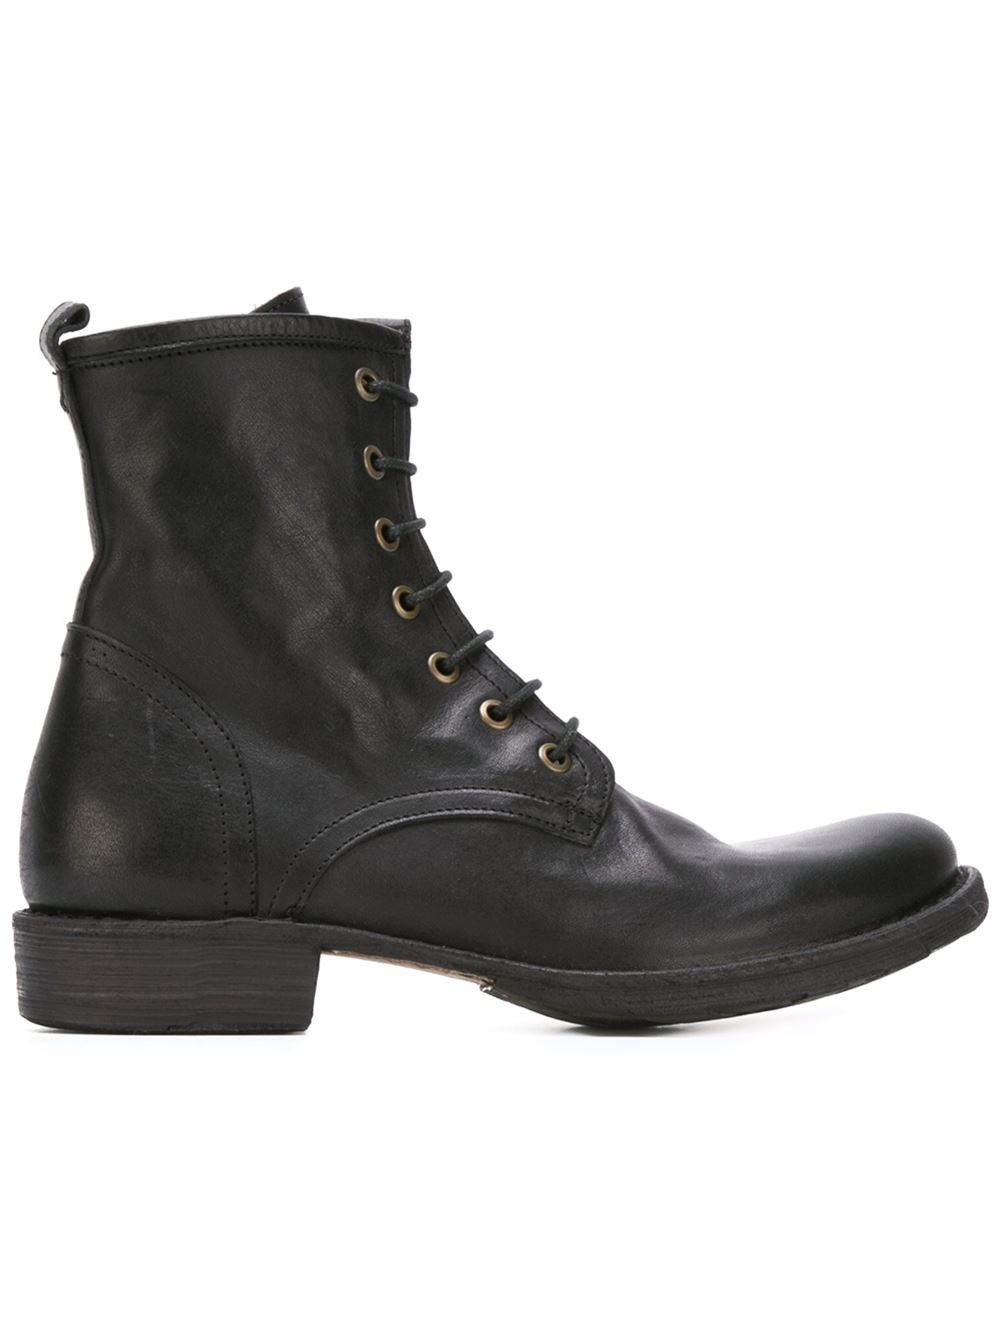 Fiorentini + Baker 'eternity Elme' Boots in Black | Lyst